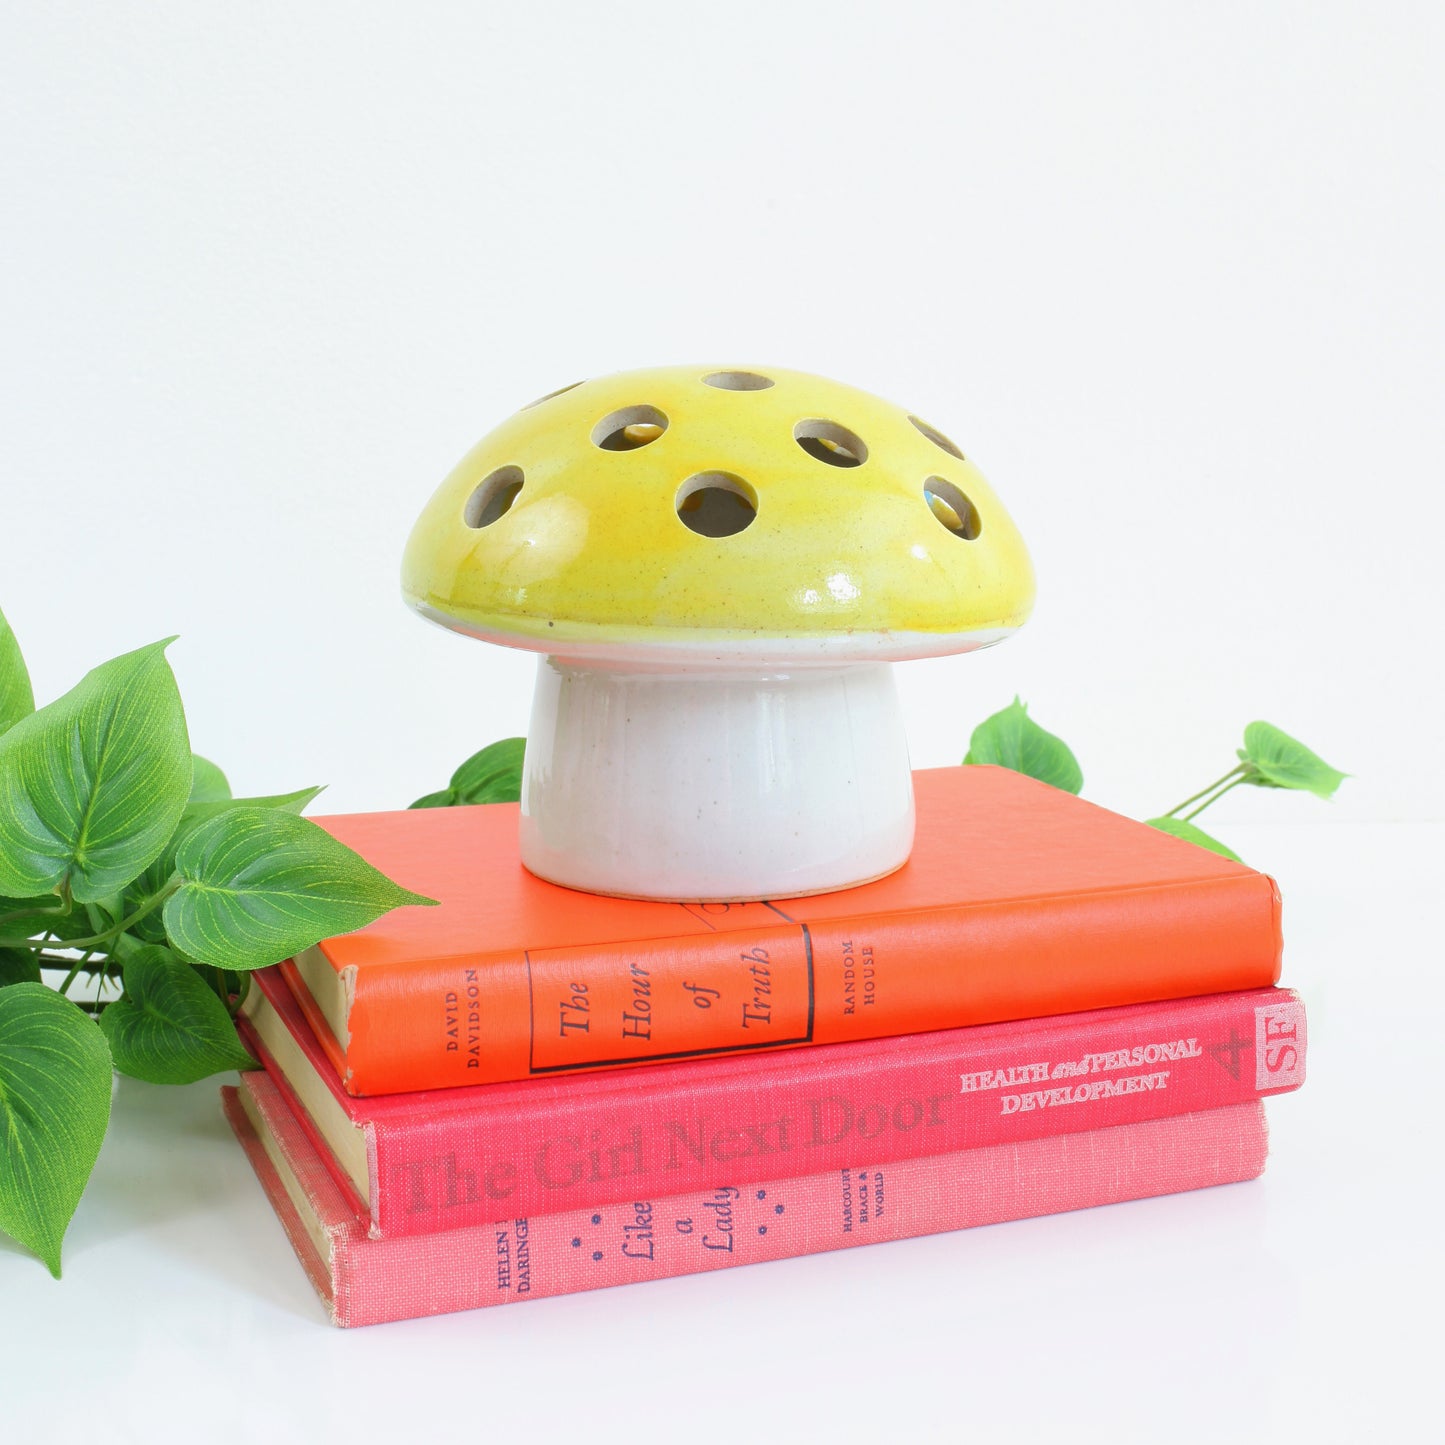 SOLD - Vintage Ceramic Mushroom Candle Holder